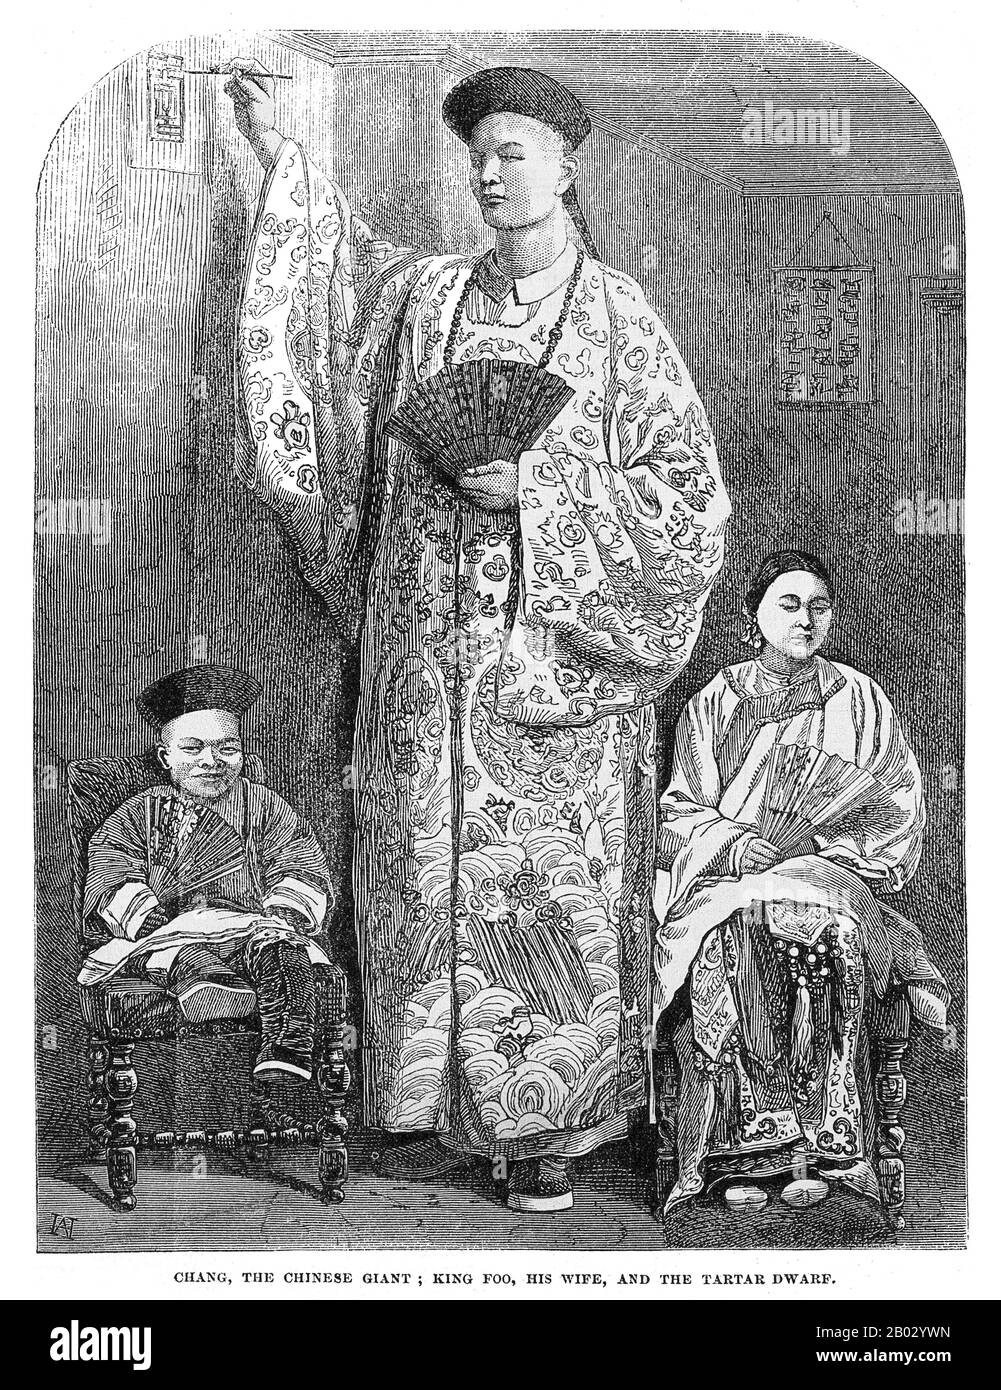 Zhan Shichai (1841 – 5 novembre 1893) è stato un gigante cinese che ha girato il mondo come "Chang the Chinese Giant" nel 19th secolo. Il suo nome era 'Chang Woo Gow'. Zhan nacque a Fuzhou, nella provincia di Fujian, nel 1840s, anche se i rapporti dell'anno variano dal 1841 al 1847. La sua altezza è stata rivendicata per essere oltre 8 piedi (2,4 m), ma non ci sono registrazioni autorevoli. Lasciò la Cina nel 1865 per viaggiare a Londra dove apparve sul palco, viaggiando in Europa, e negli Stati Uniti e in Australia come 'Chang the Chinese Giant'. Zhan ricevette una buona educazione in vari paesi, e sviluppò un buon und Foto Stock